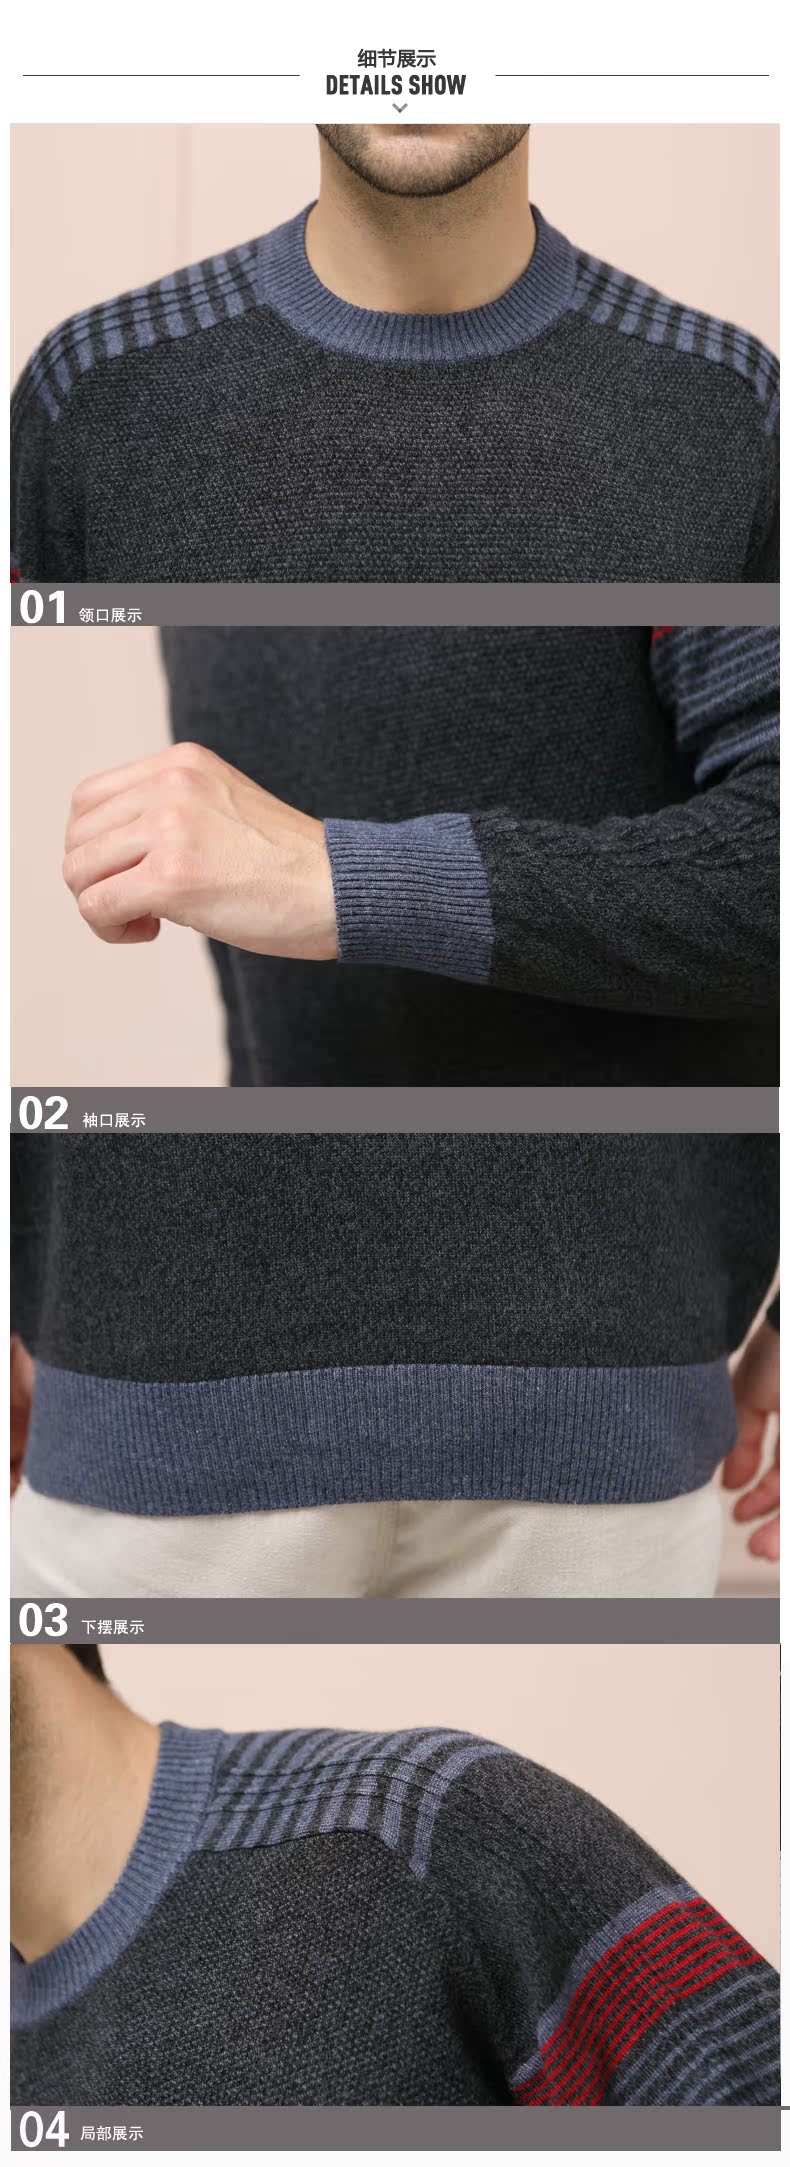 贝龙羊绒 春季新款简约圆领纯色羊绒衫  男士羊毛衫针织毛衣 81249